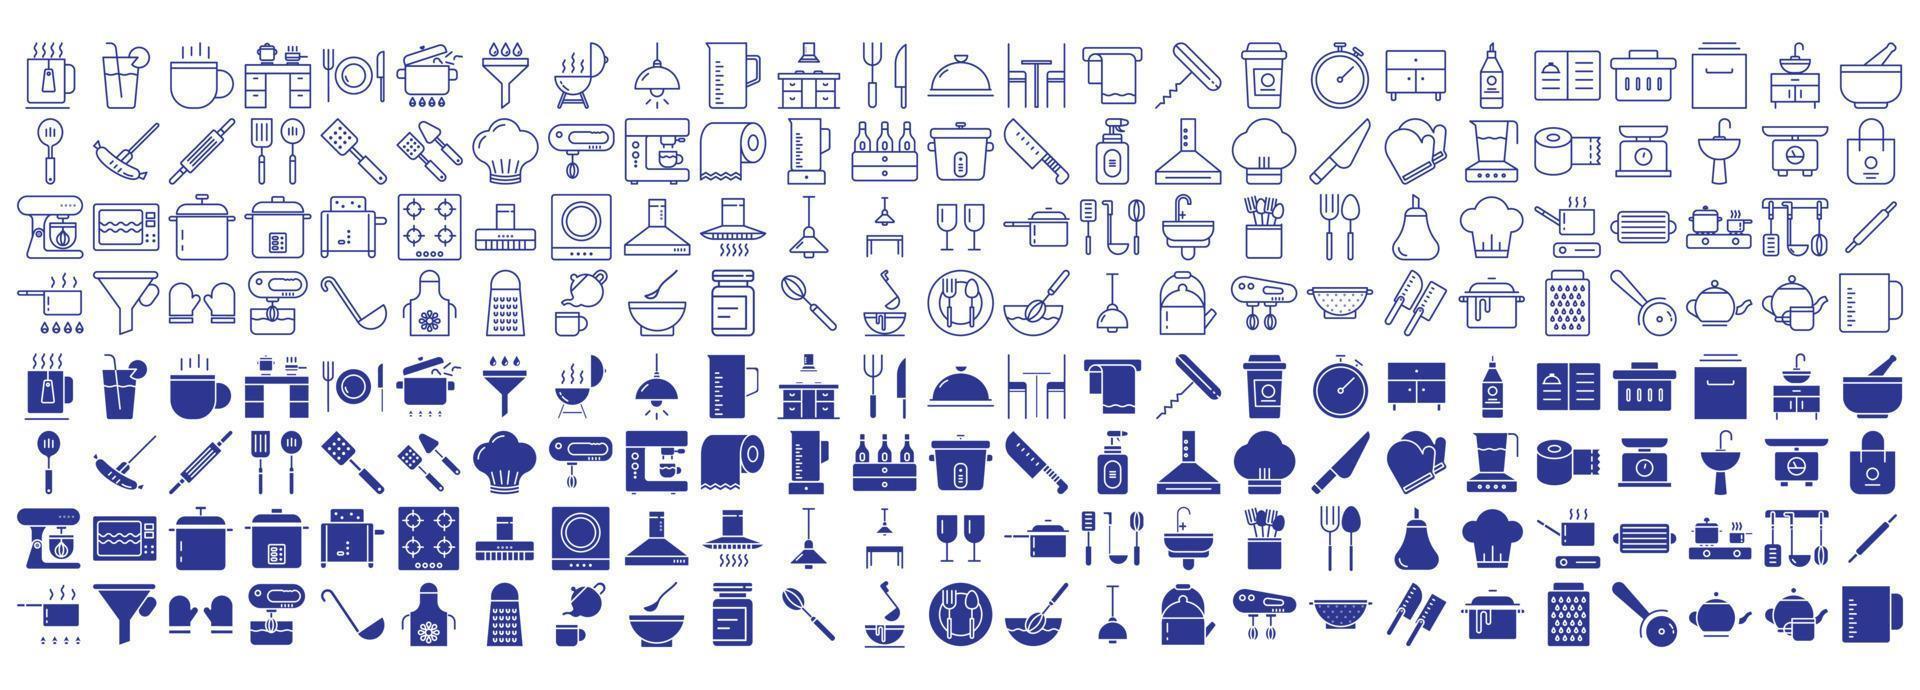 Sammlung von Symbolen im Zusammenhang mit Küche und Kochen, einschließlich Symbolen wie Tasse, Küche, Kochen, Koch und mehr. Vektorgrafiken, pixelgenau vektor